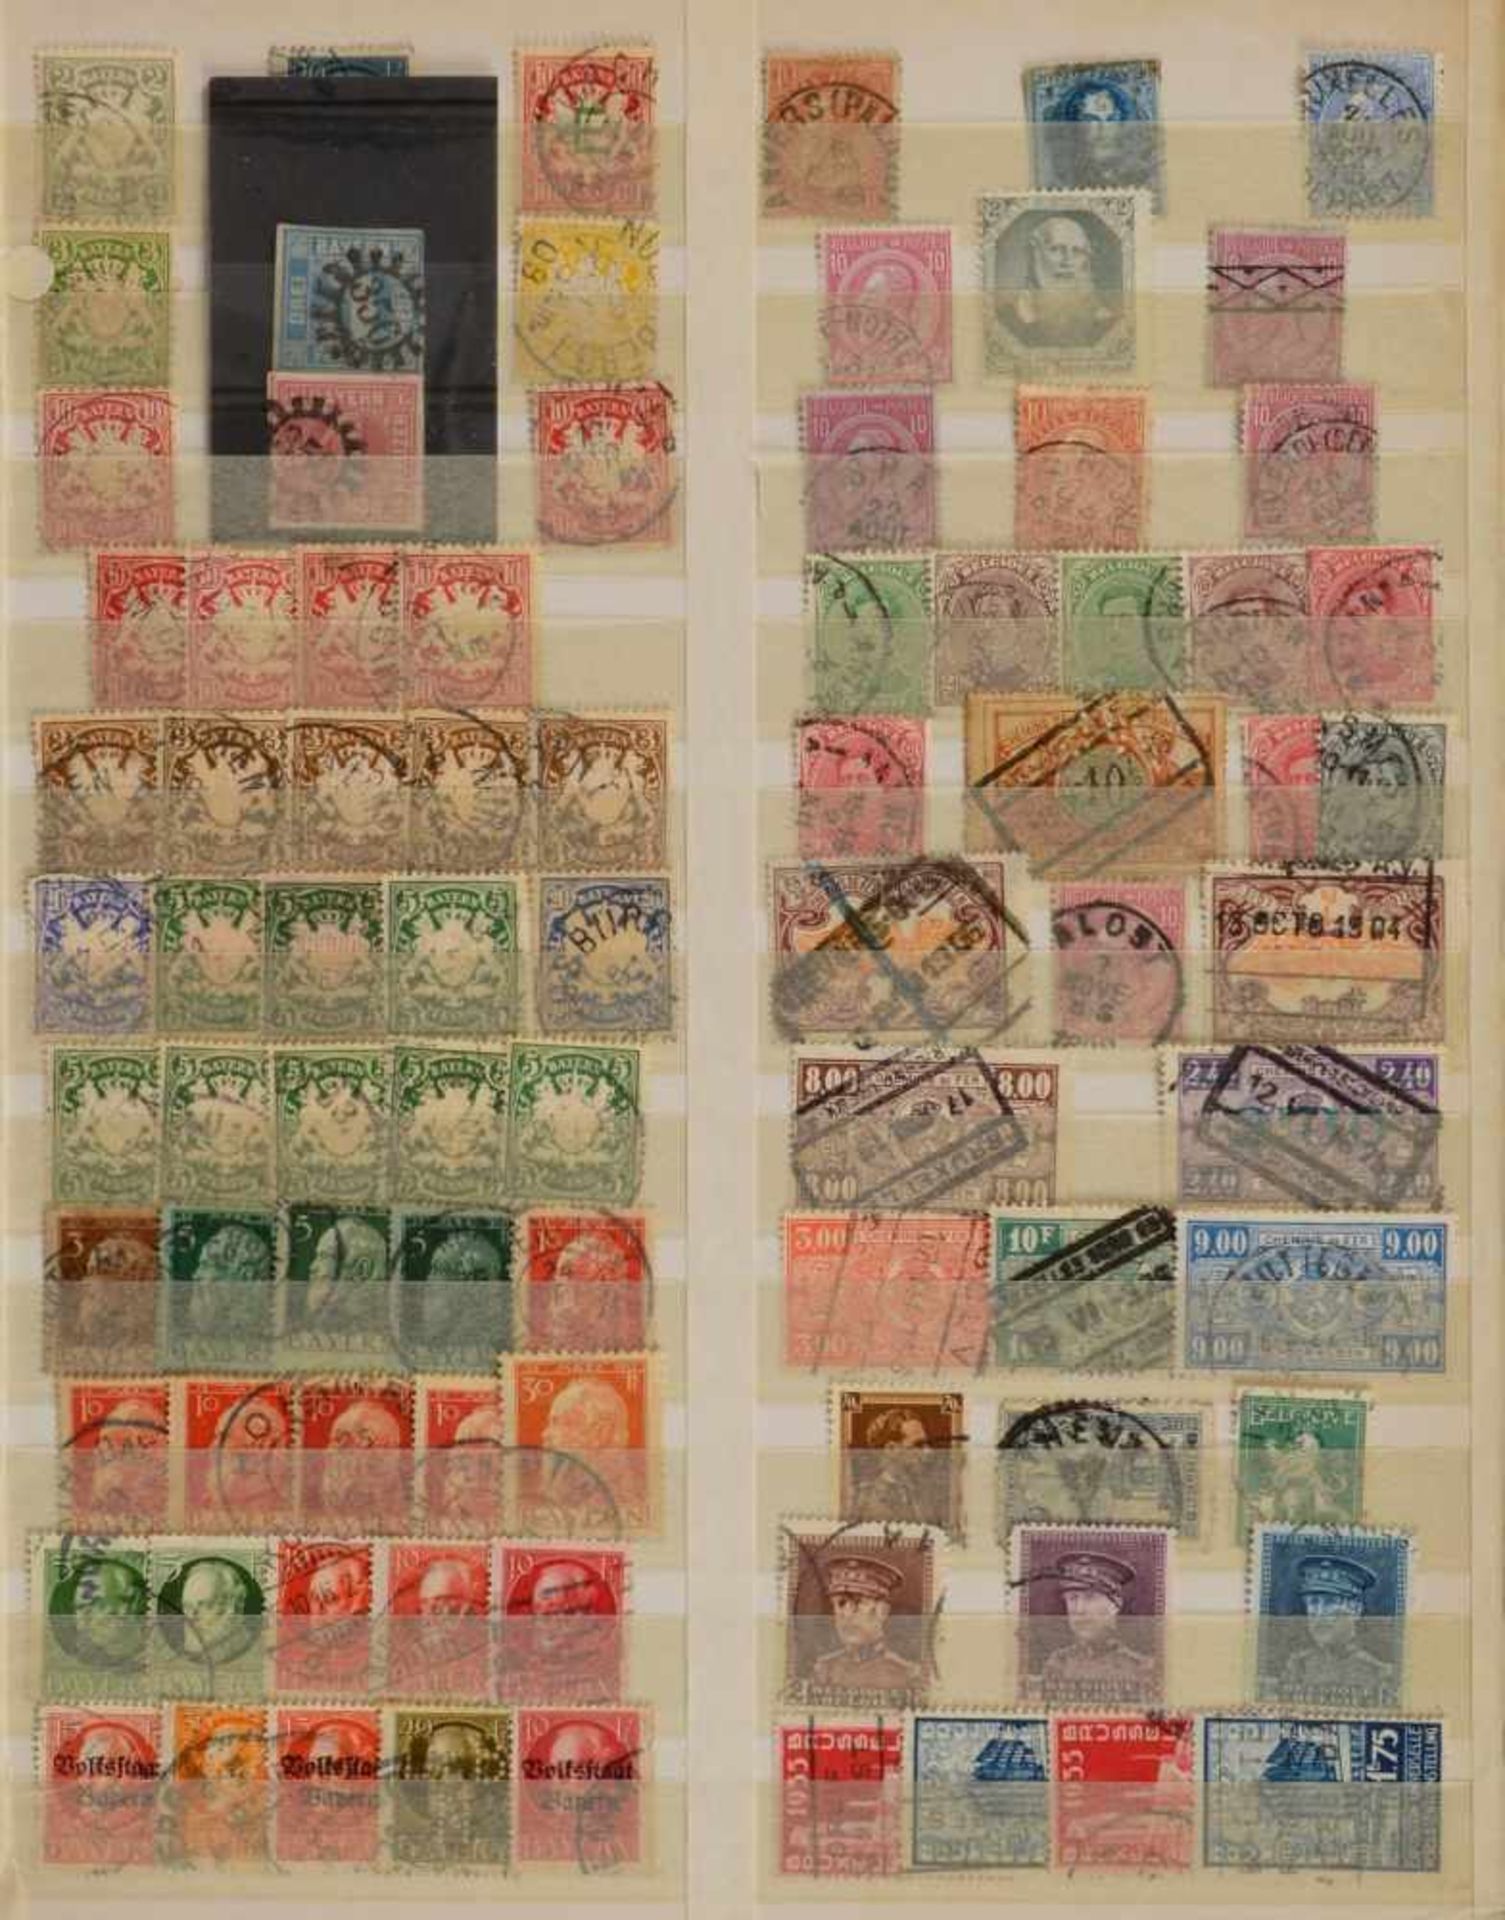 Briefmarkensammlung: 'Europa' - 'Übersee', in einer dicken blauschwarzen Schwarte gesammelt, 40